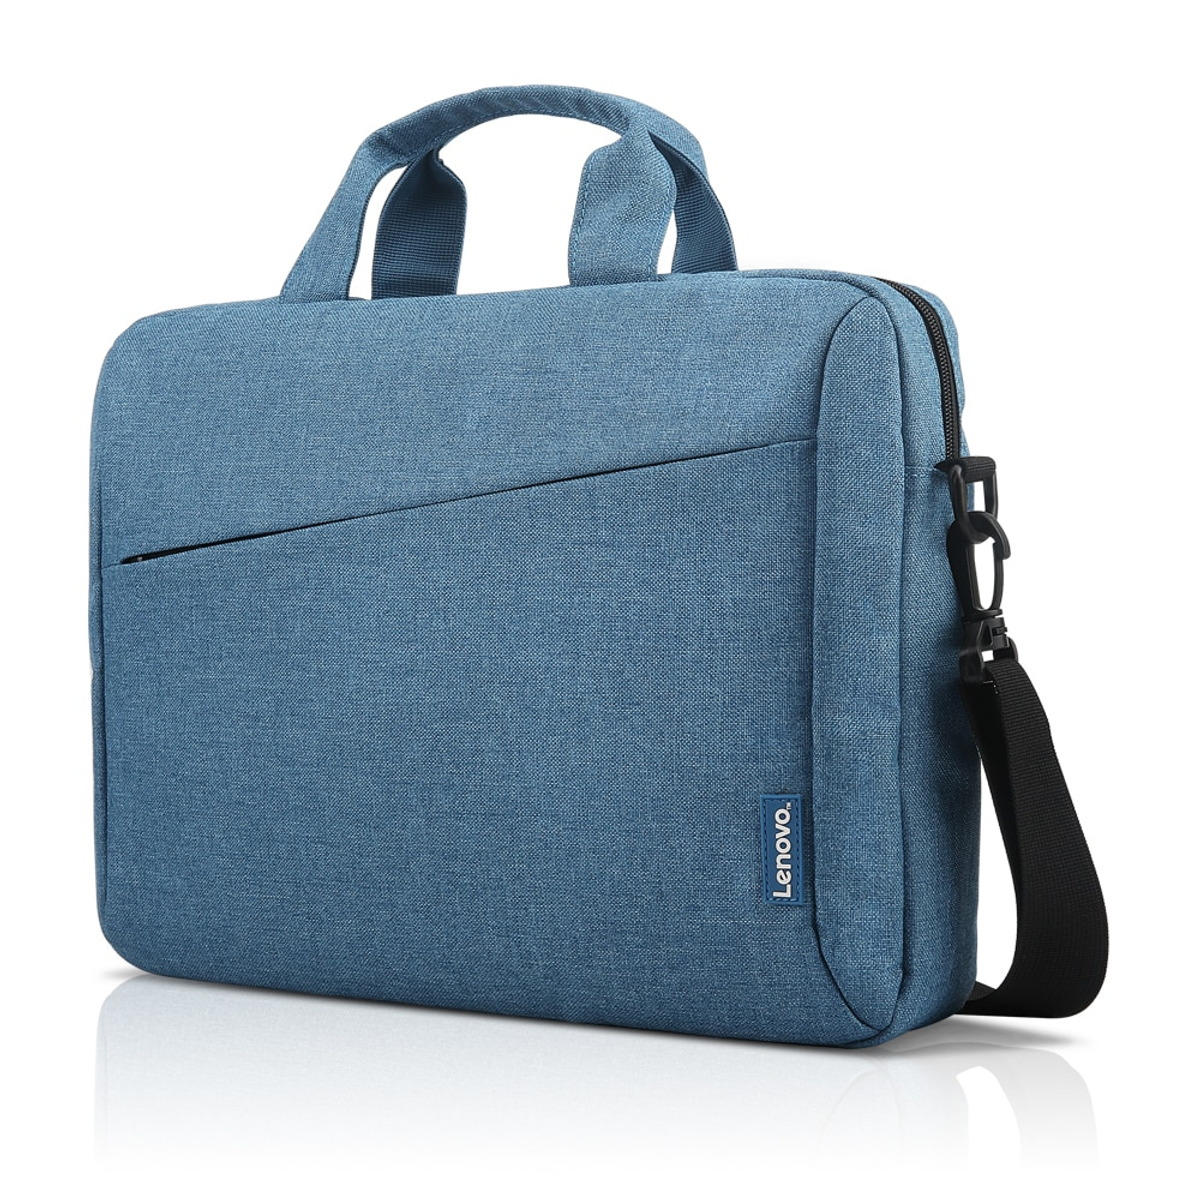 LENOVO für BLUE Polyester, Notebook-Tasche Blau TOPLOADER GX40Q17230 LAPTOP universal Umhängetasche 15.6” T210 CASUAL